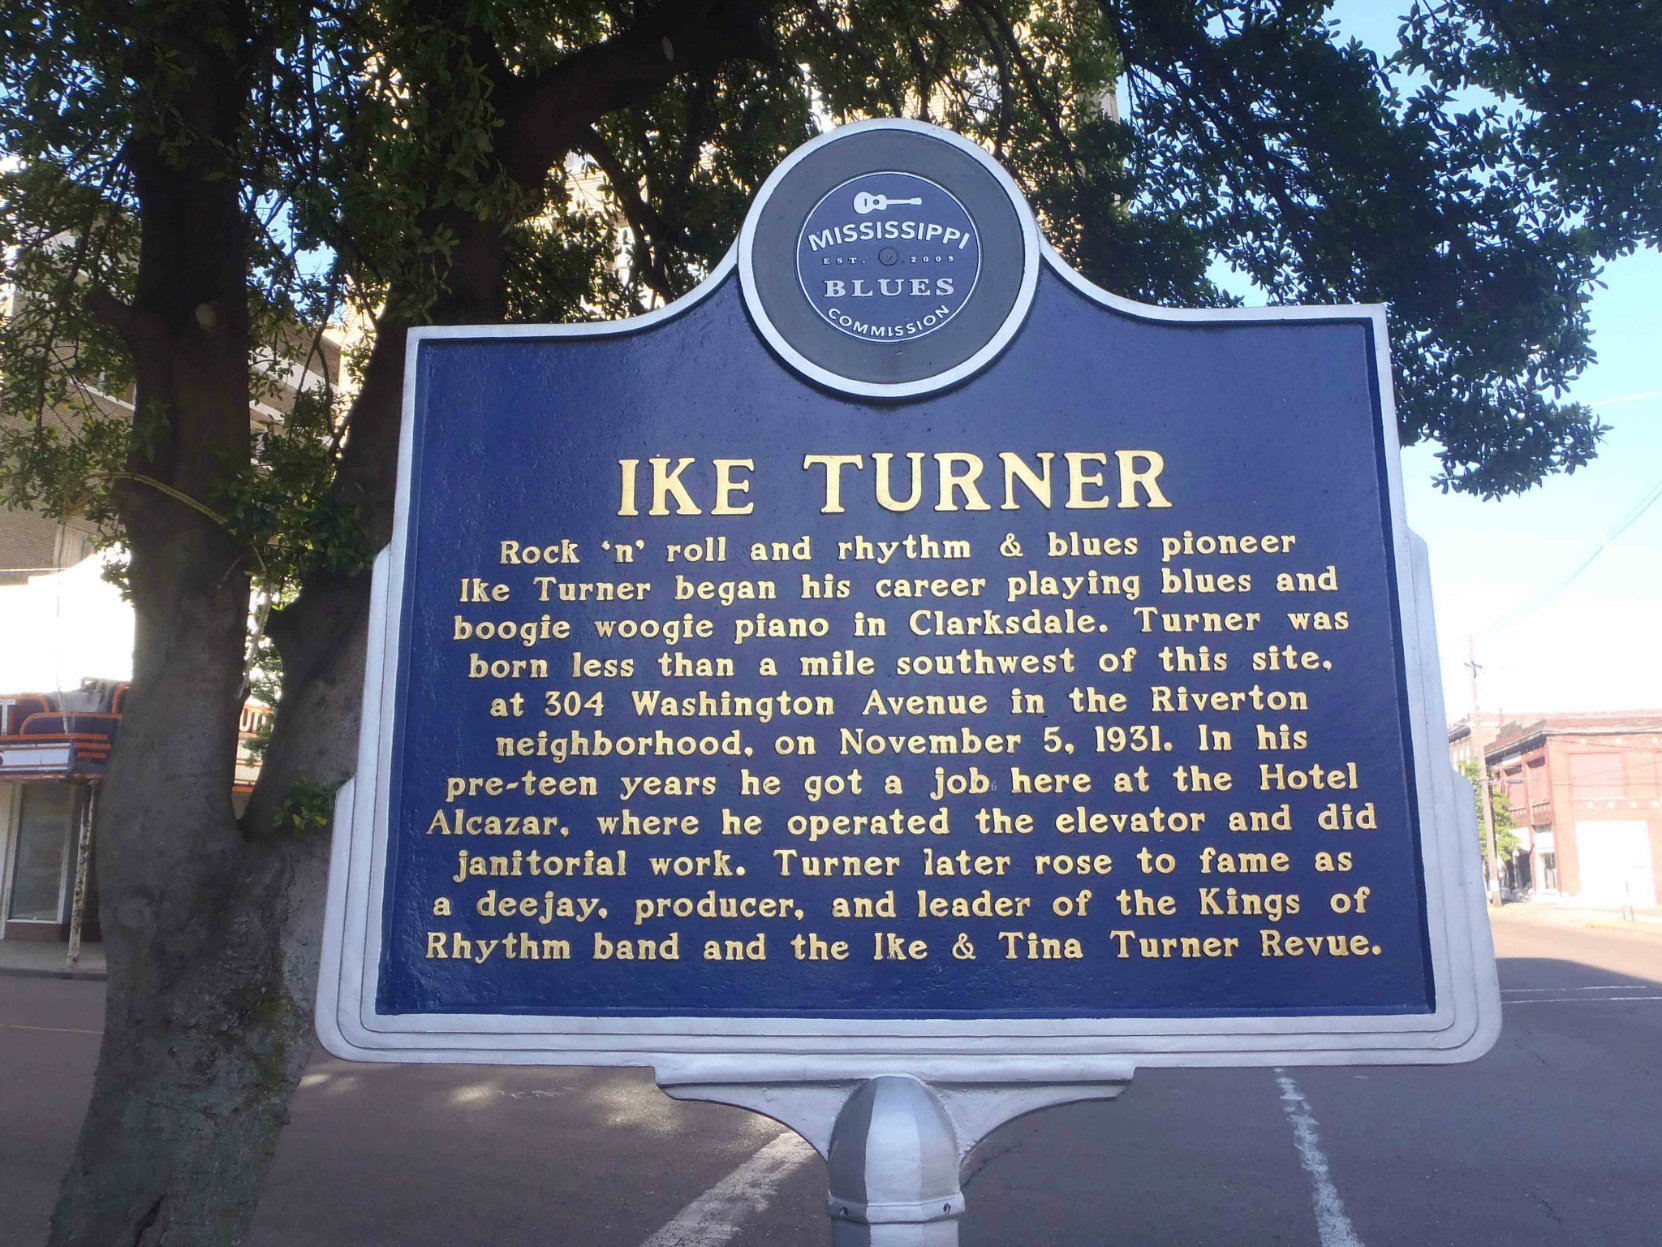 Mississippi Blues Trail marker for Ike Turner, Clarksdale, Mississippi